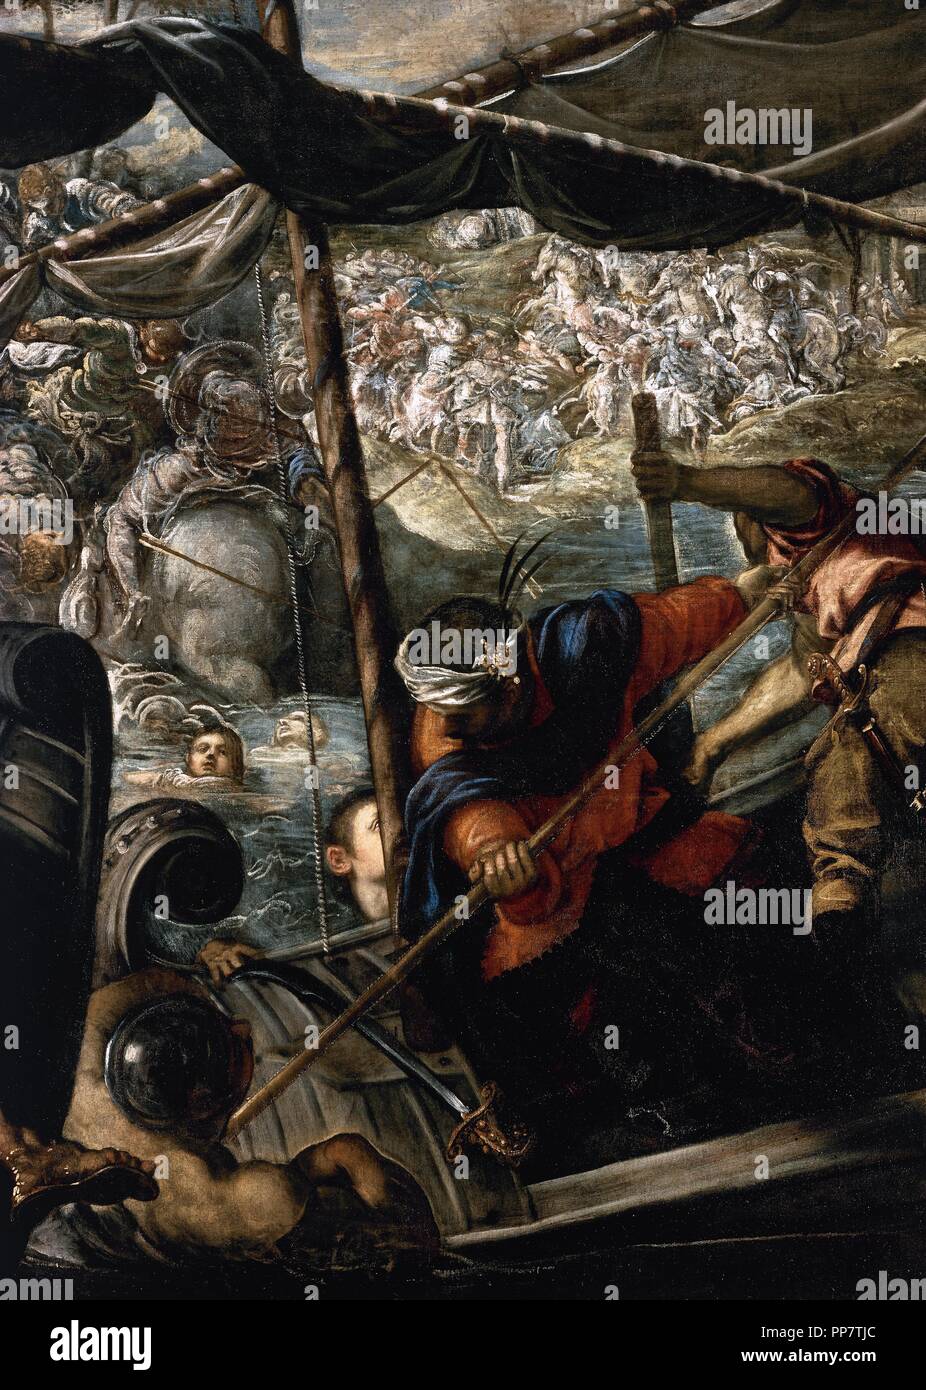 Jacopo Robusti (Tintoret) (1518-1594). Peintre italien. L'enlèvement d'Hélène, 1578-1579. Musée du Prado. Madrid. L'Espagne. Banque D'Images